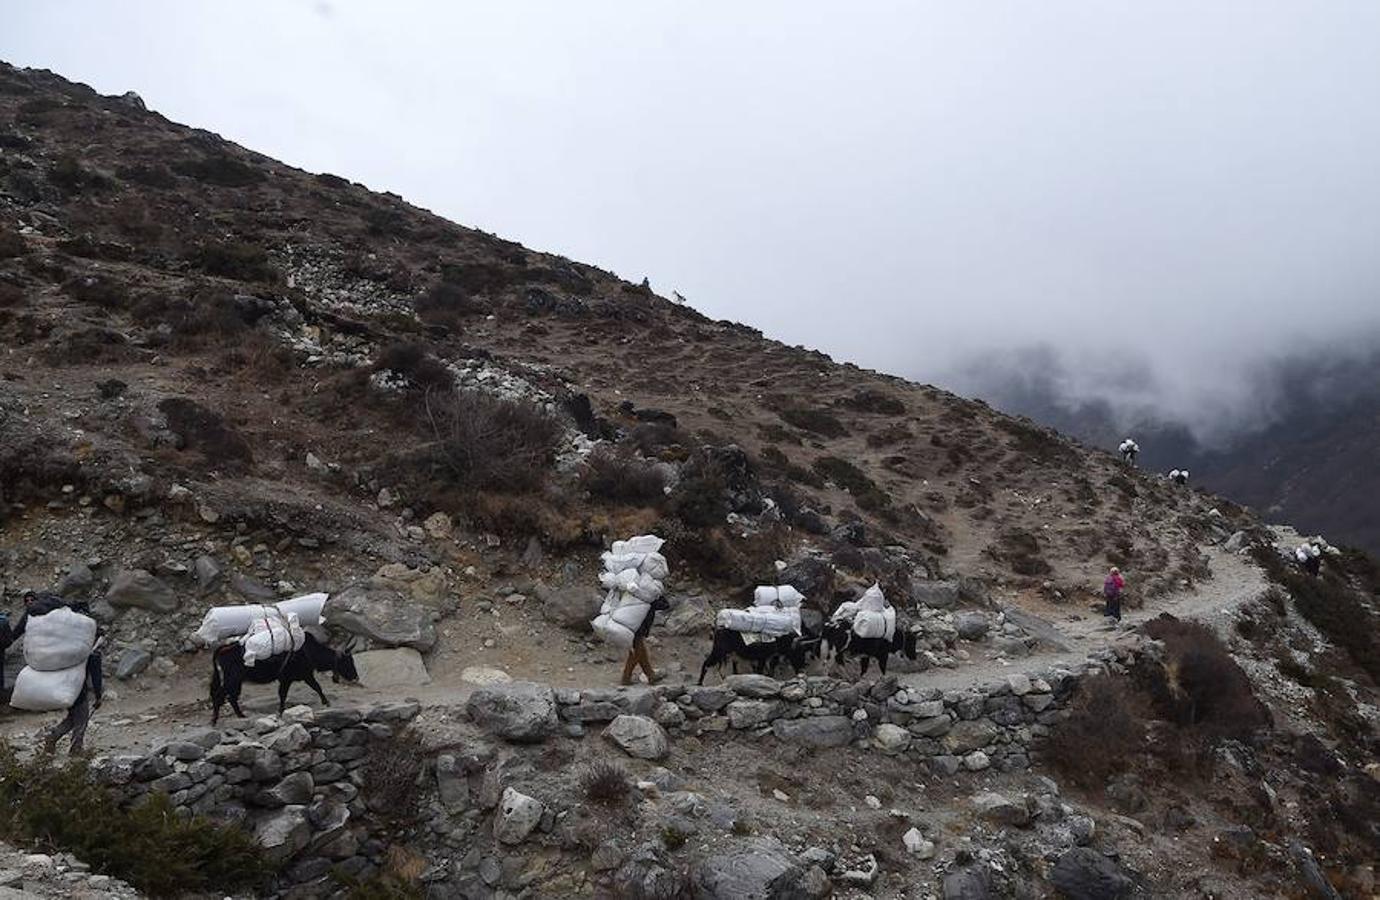 Comienza la temporada de escalada en el Himalaya. La ruta de subida a la cumbre acoge una gran cantidad de turistas que intenta ascender algún tramo del pico más alto del planeta. La imagen que más se repite estos días son grupos de excursionistas pasando por la aldea de Phortse a Pheriche en dirección al Everest.